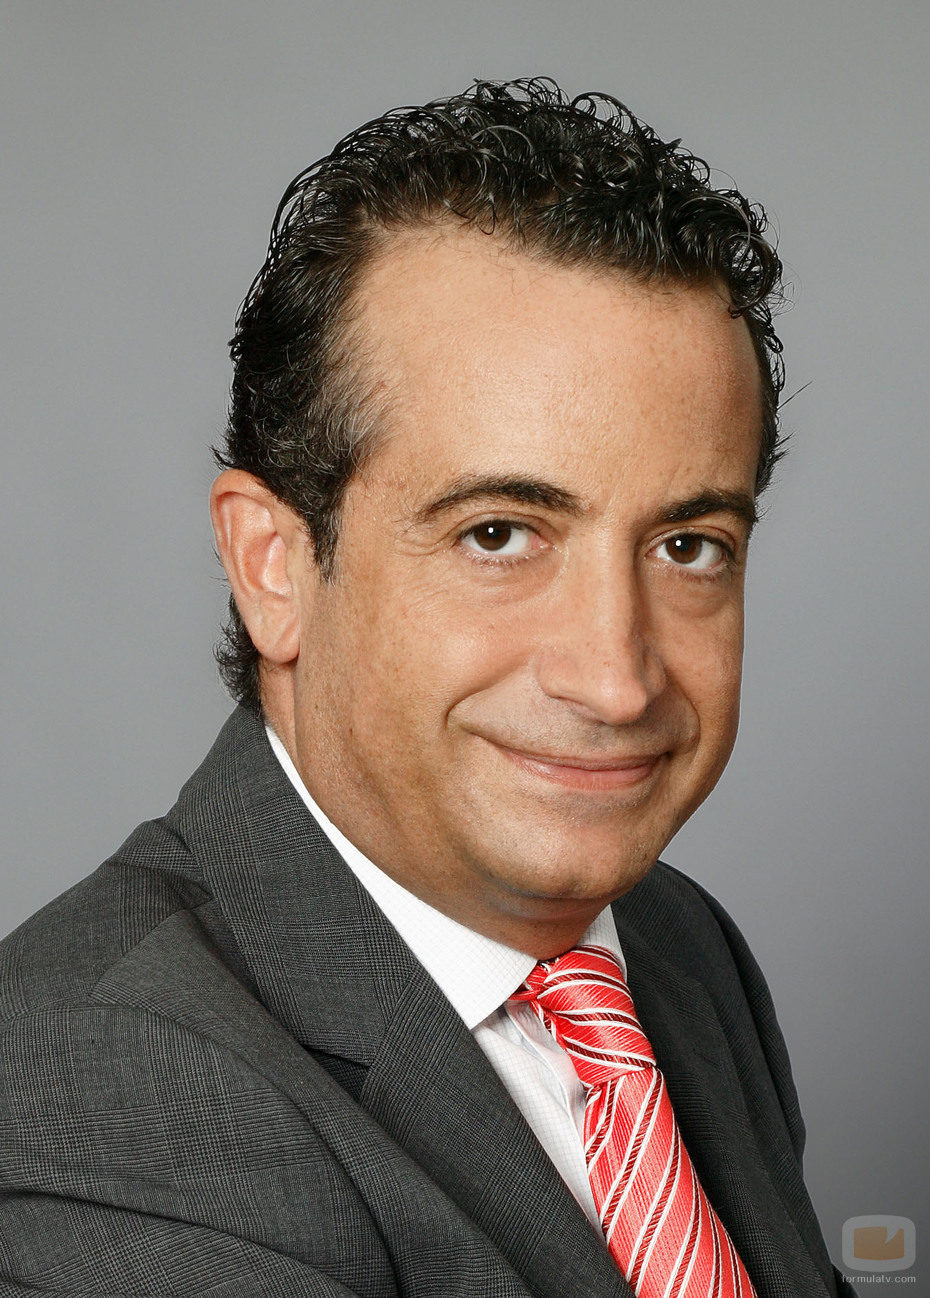 J.J. Santos, presentador de deportes en Telecinco